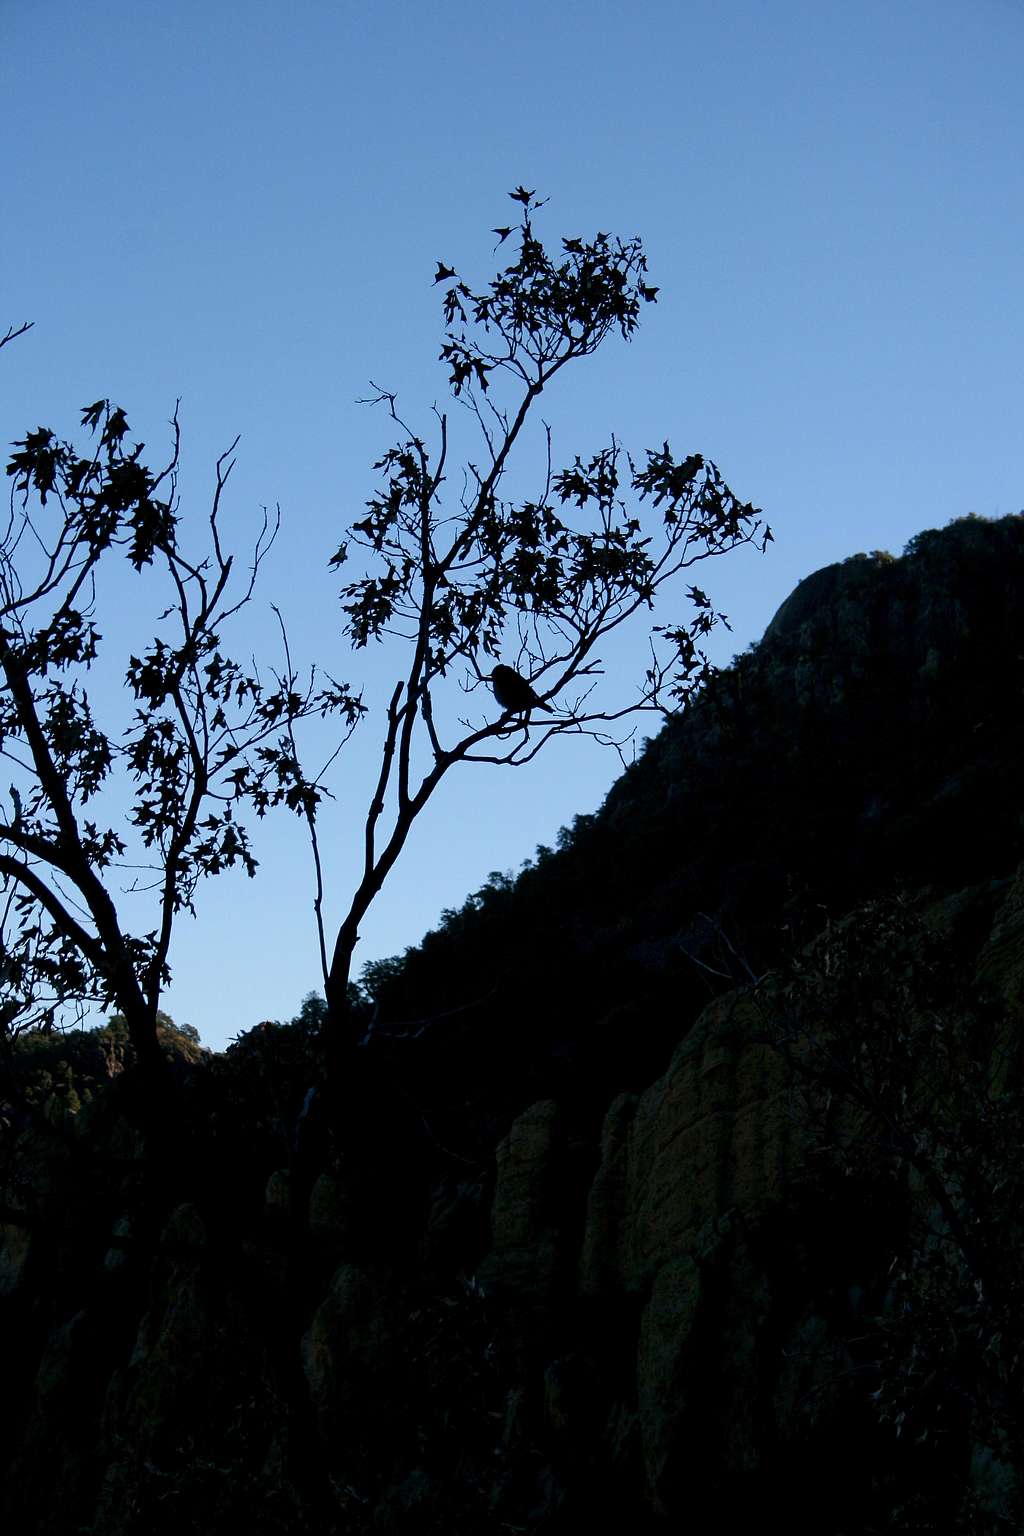 Bird Silhouette on Pinnacles Trail